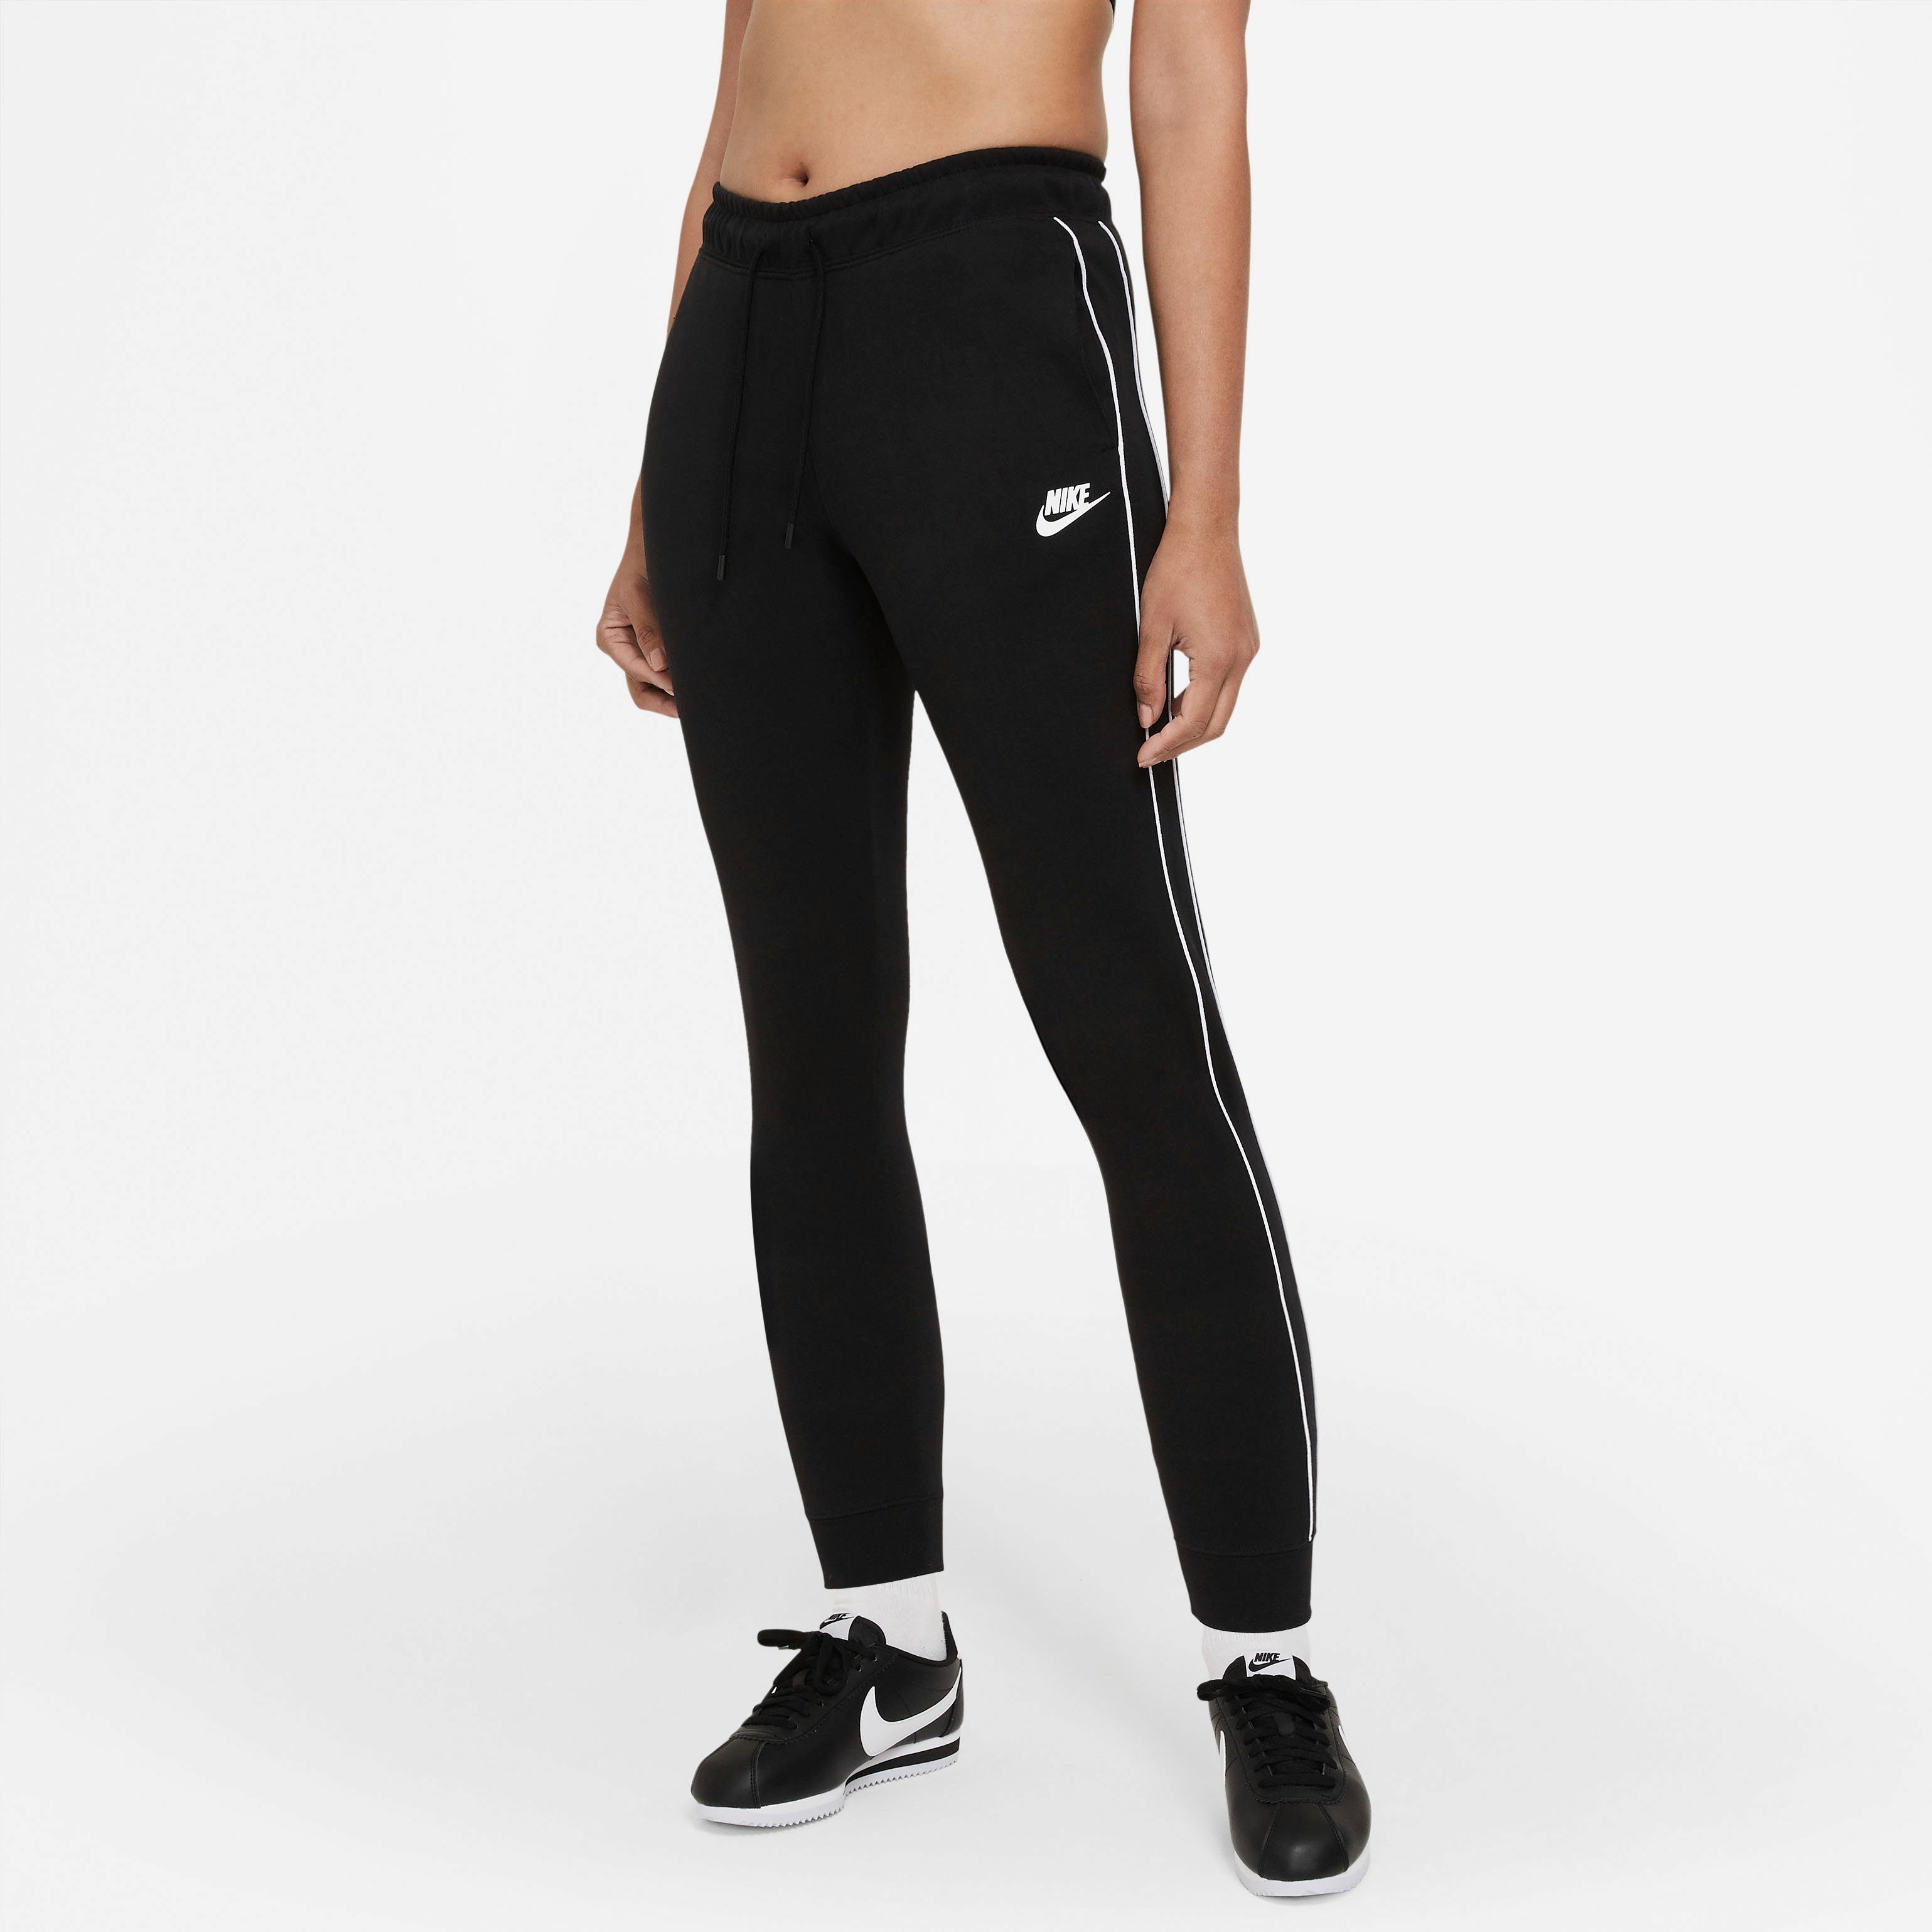 Nike Damen Jogginghosen kaufen » Nike Damen Jogger | OTTO